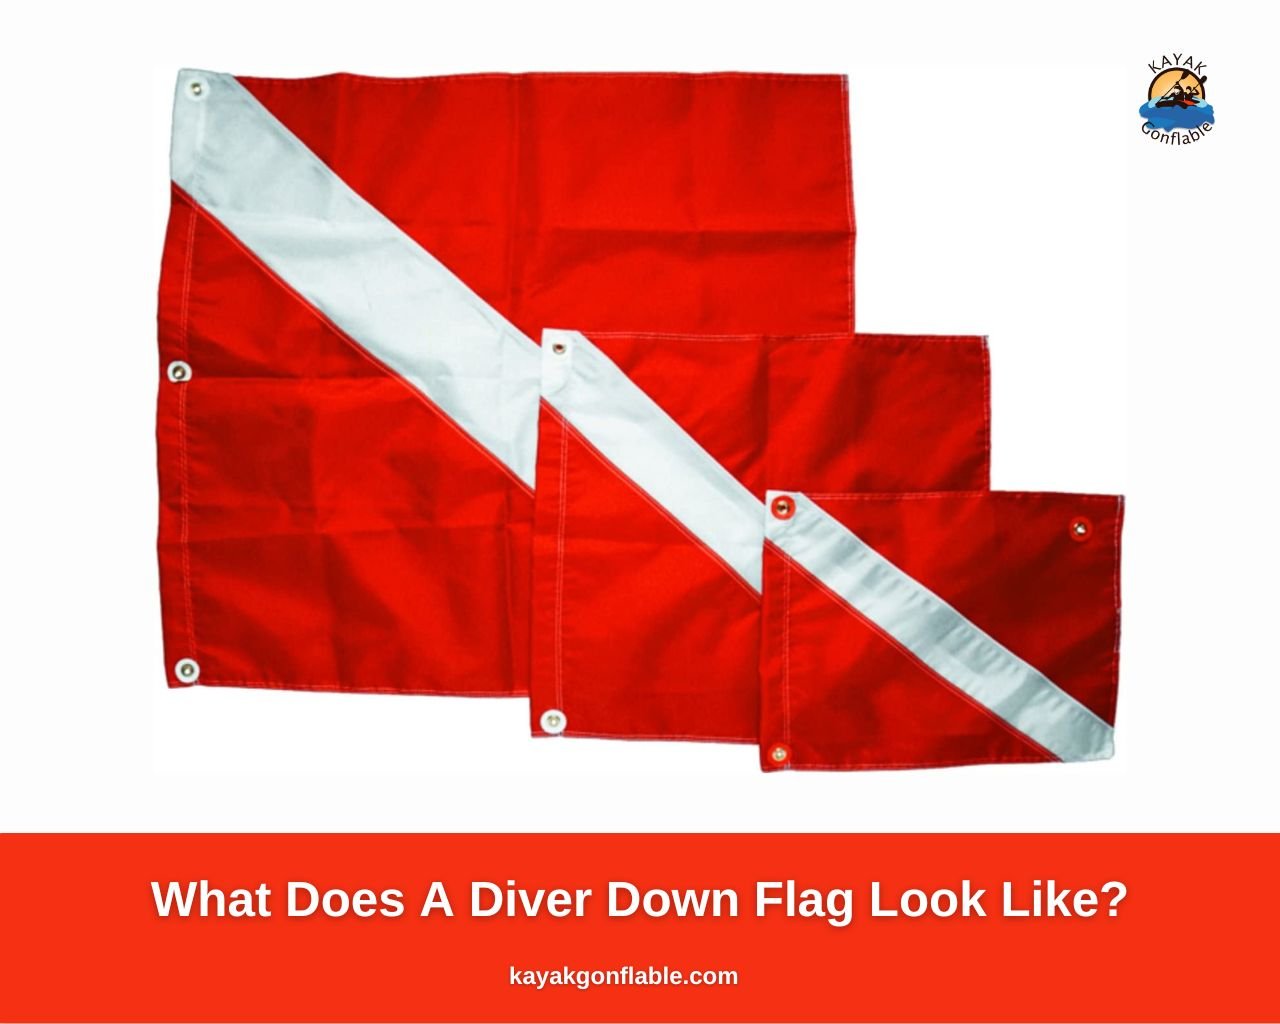 À quoi ressemble un drapeau Diver Down